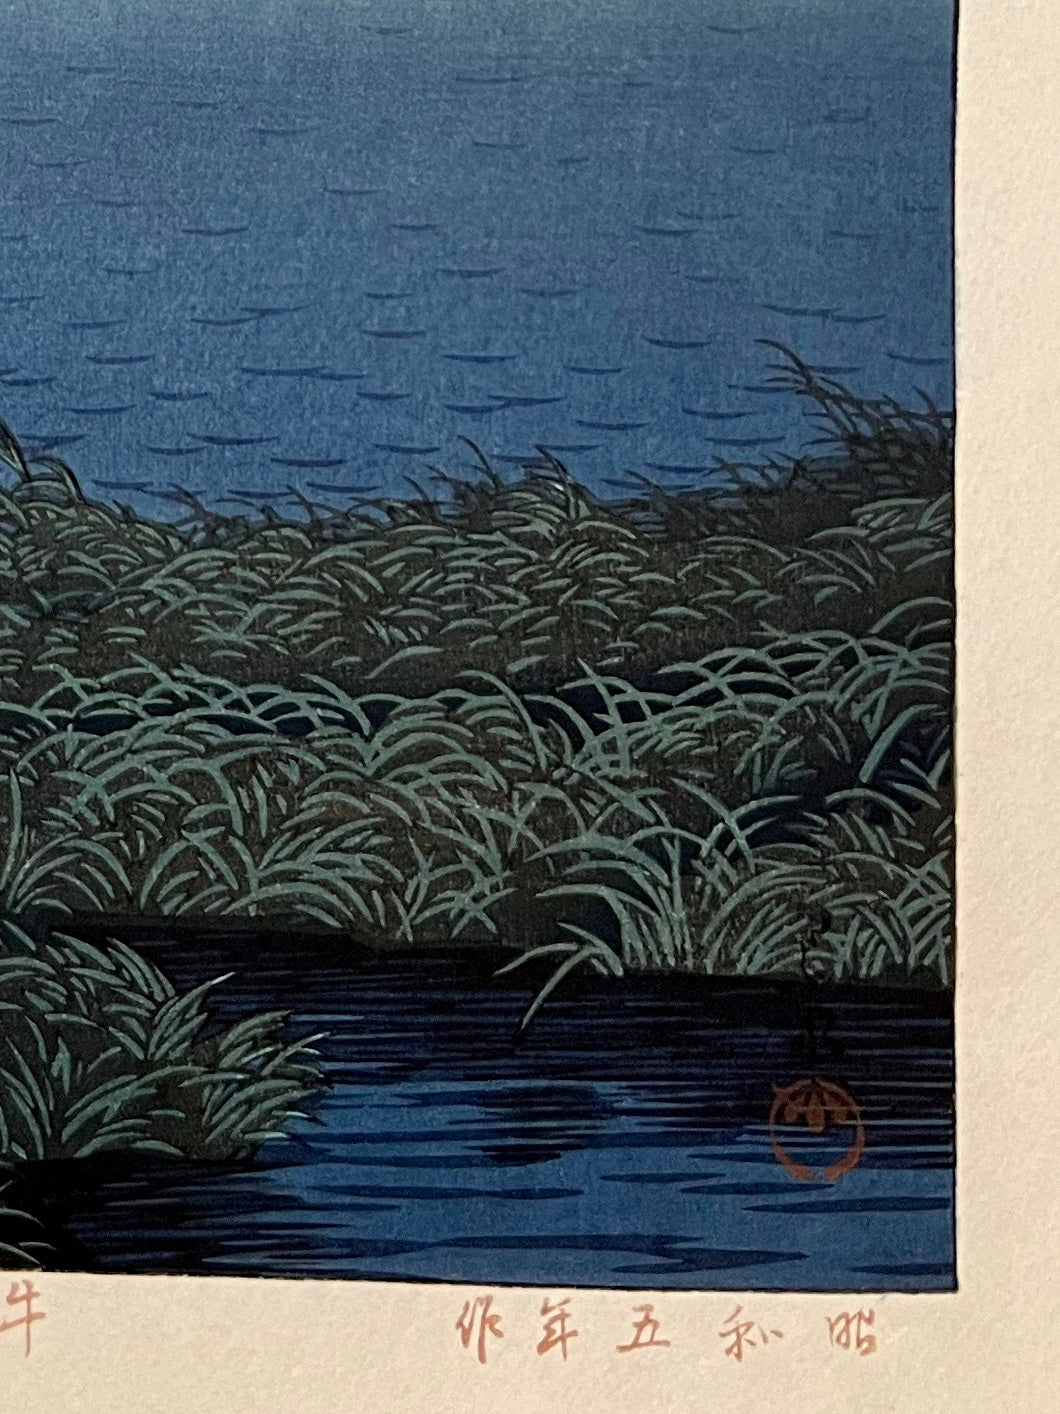 estampe japonaise shin-hanga de Hasui un bateau sur une rivière calme au crépuscule, signature